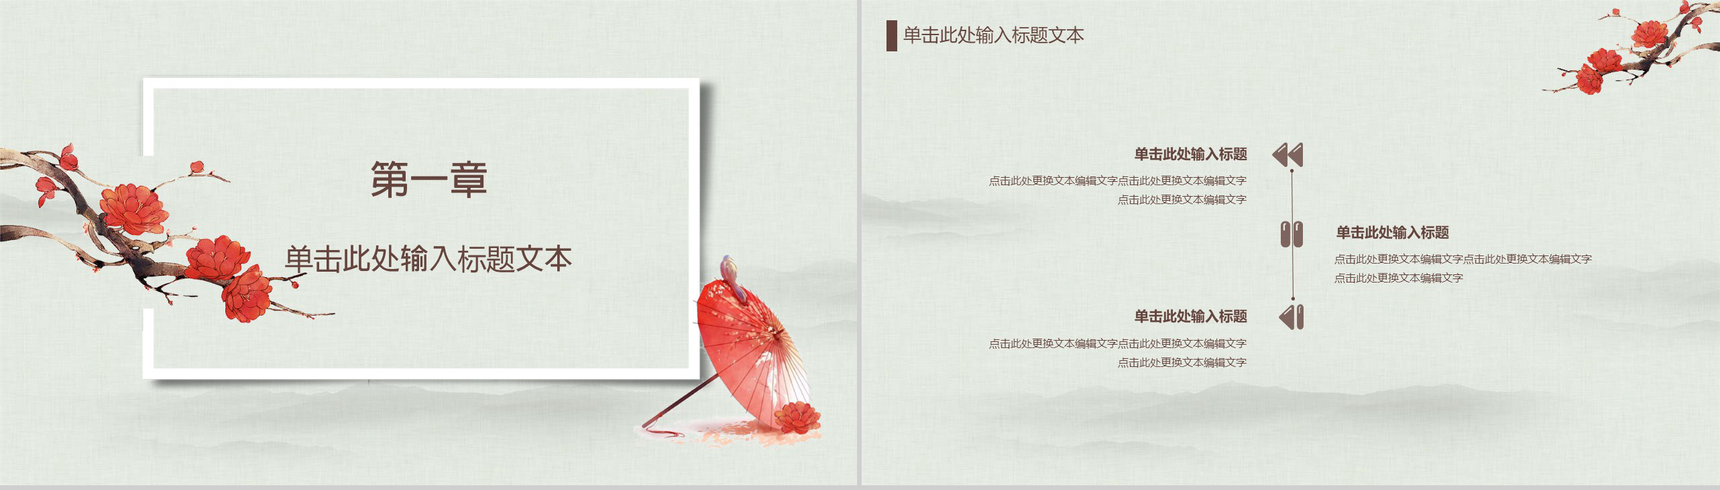 中国传统文化宫廷风传统文化PPT模板-3